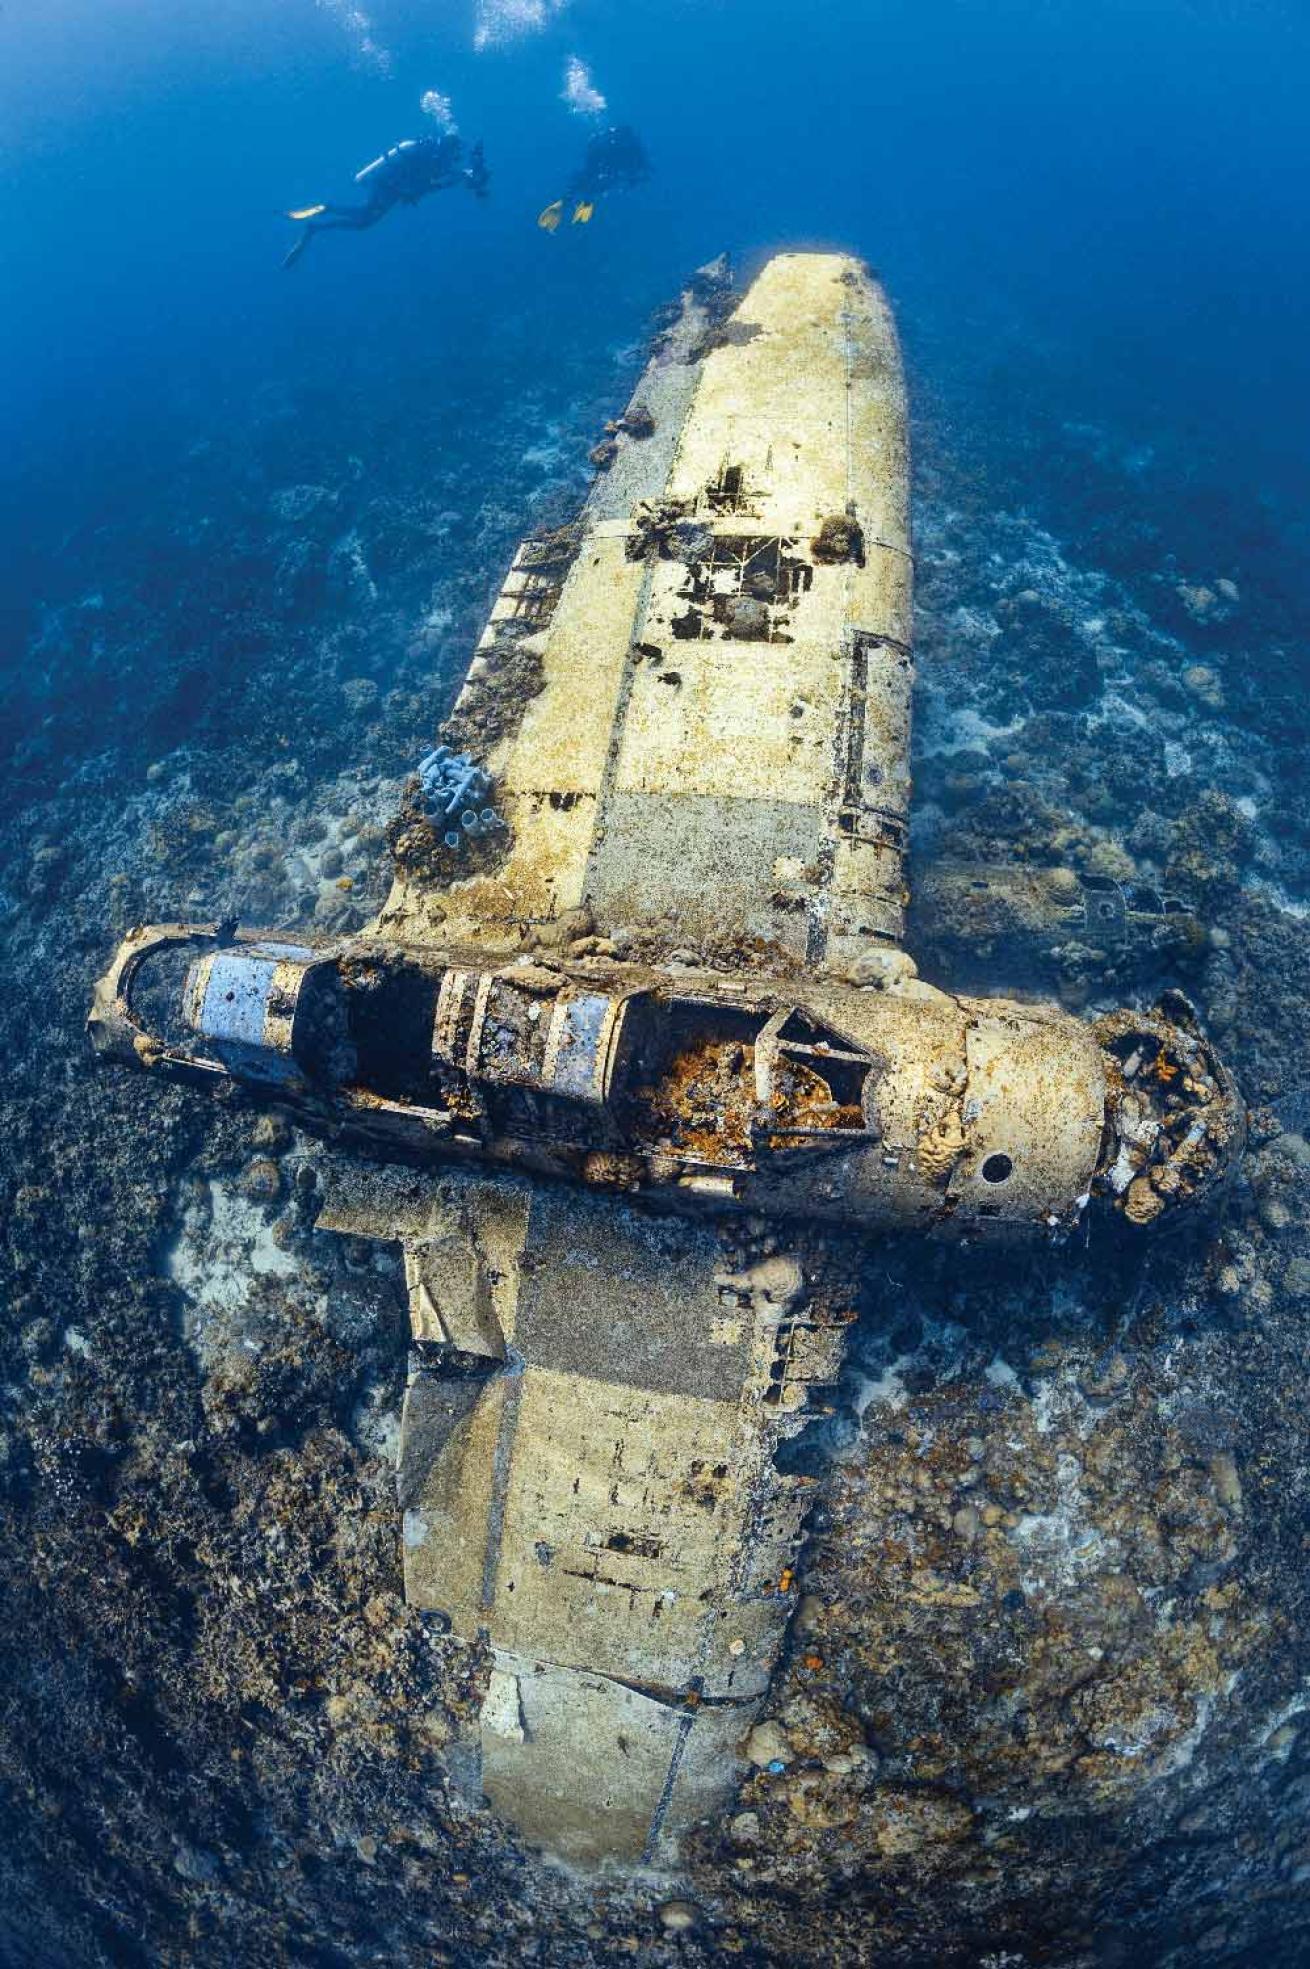 underwater wrecked plane